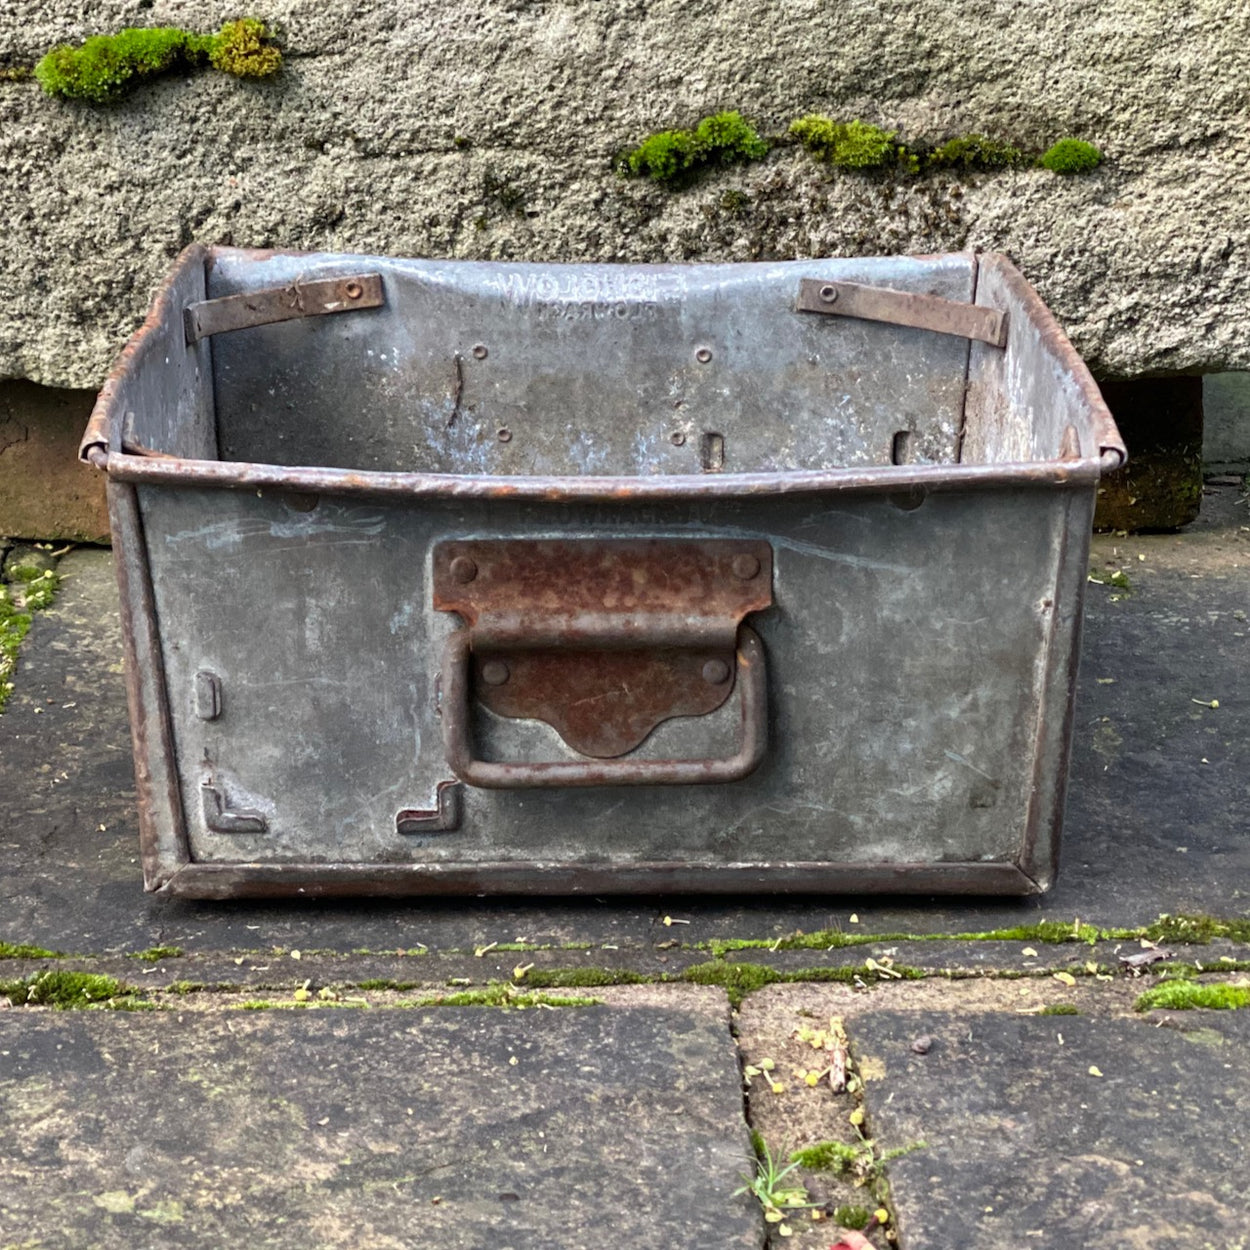 Vintage Metal Tote Box